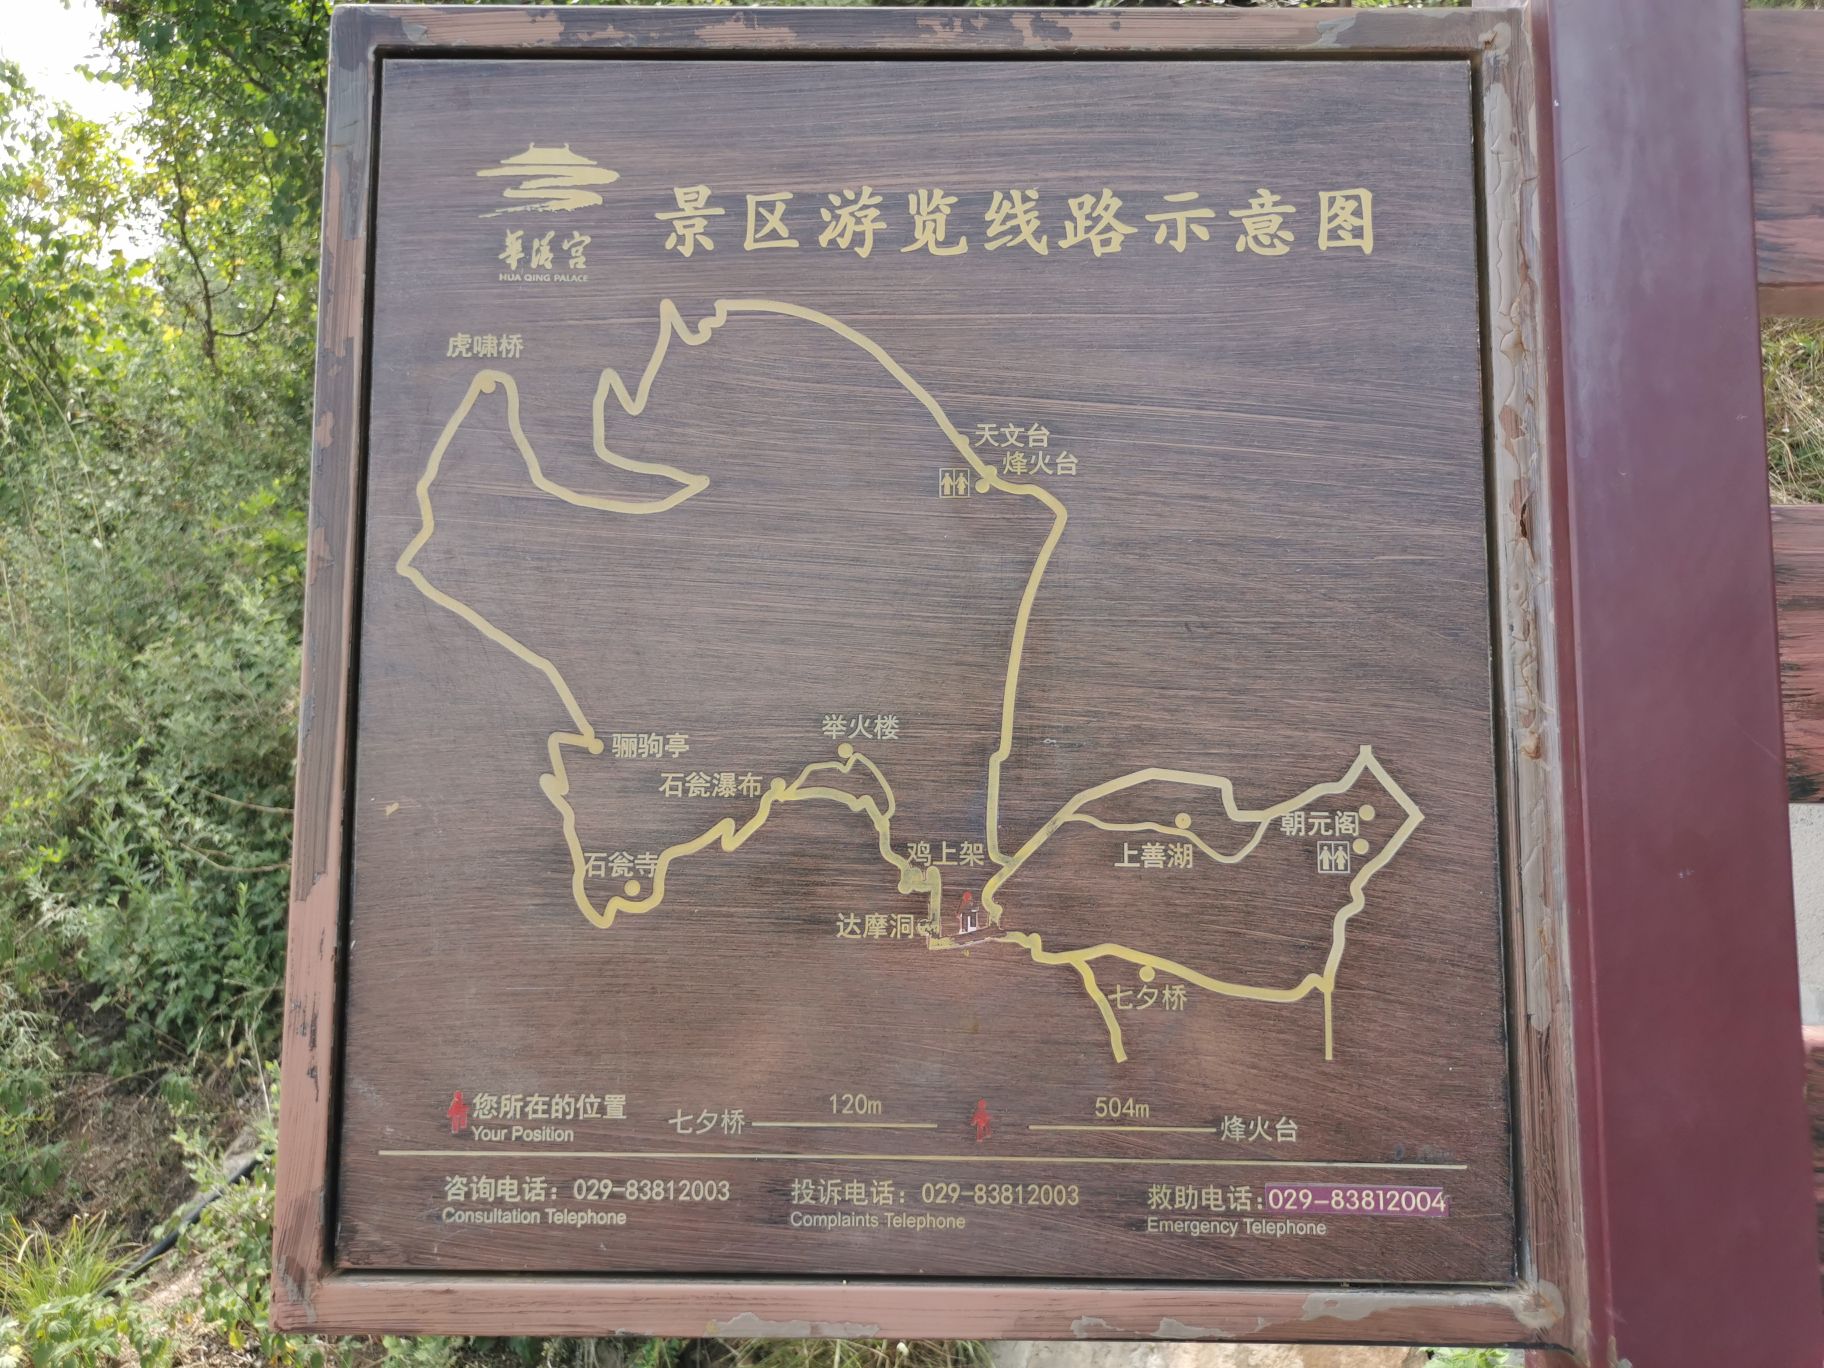 骊山最美环山路地图图片